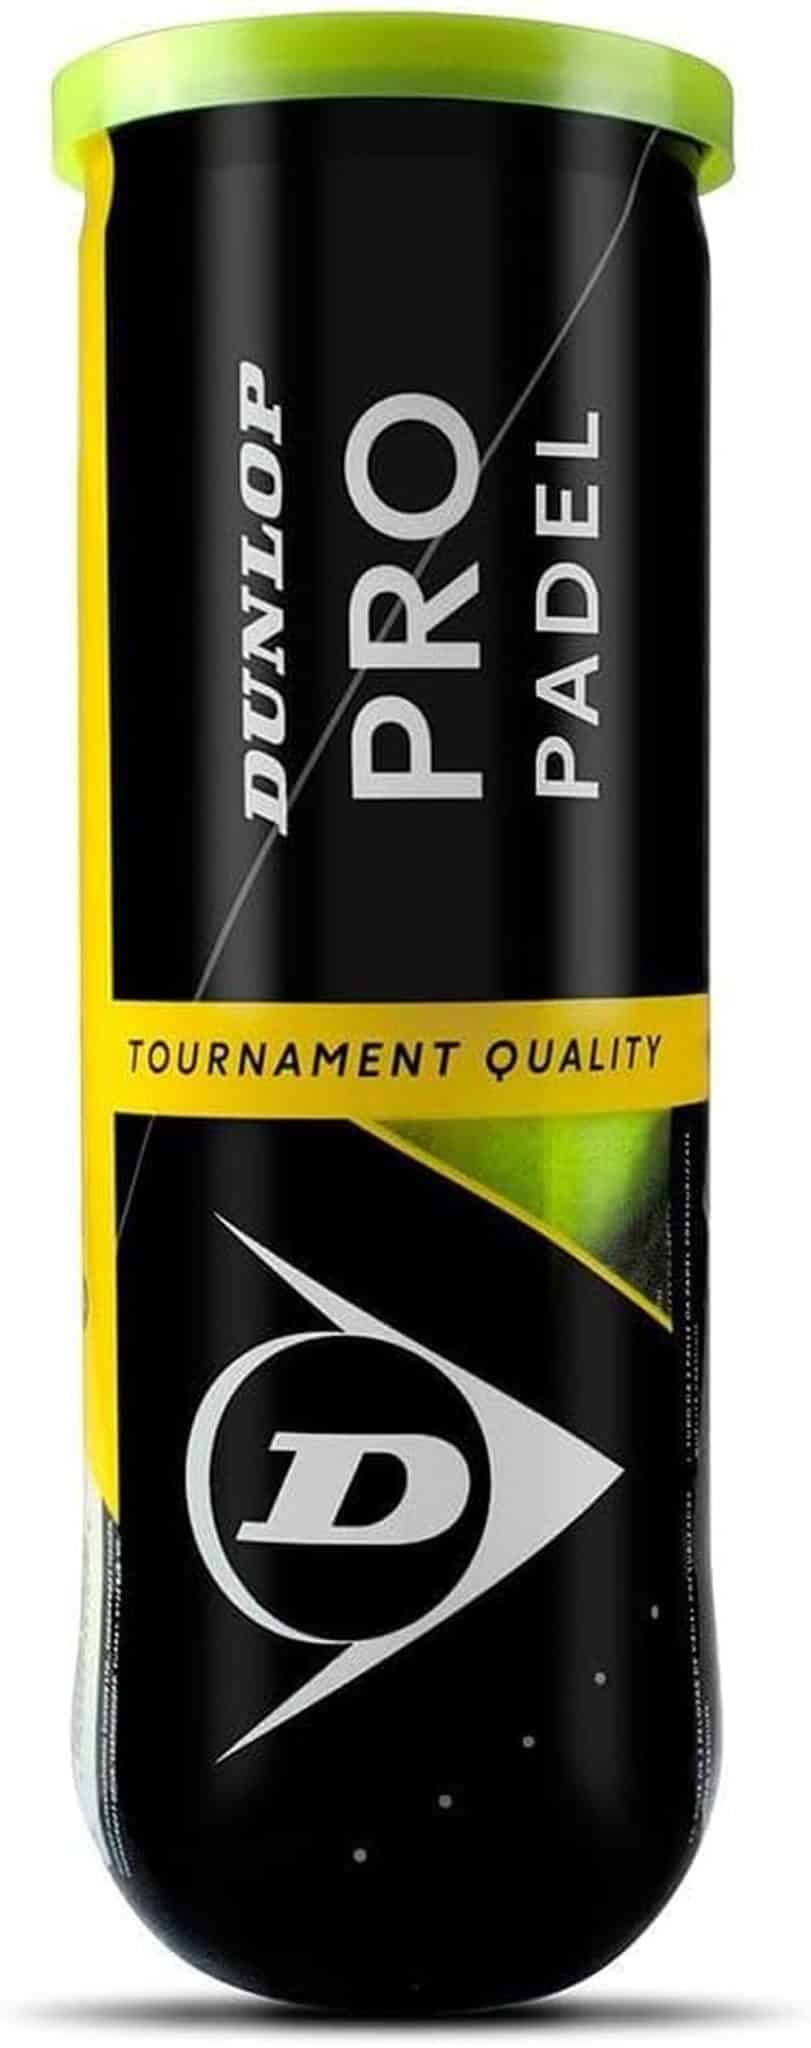 Test de balles Dunlop Pro Padel : le verdict